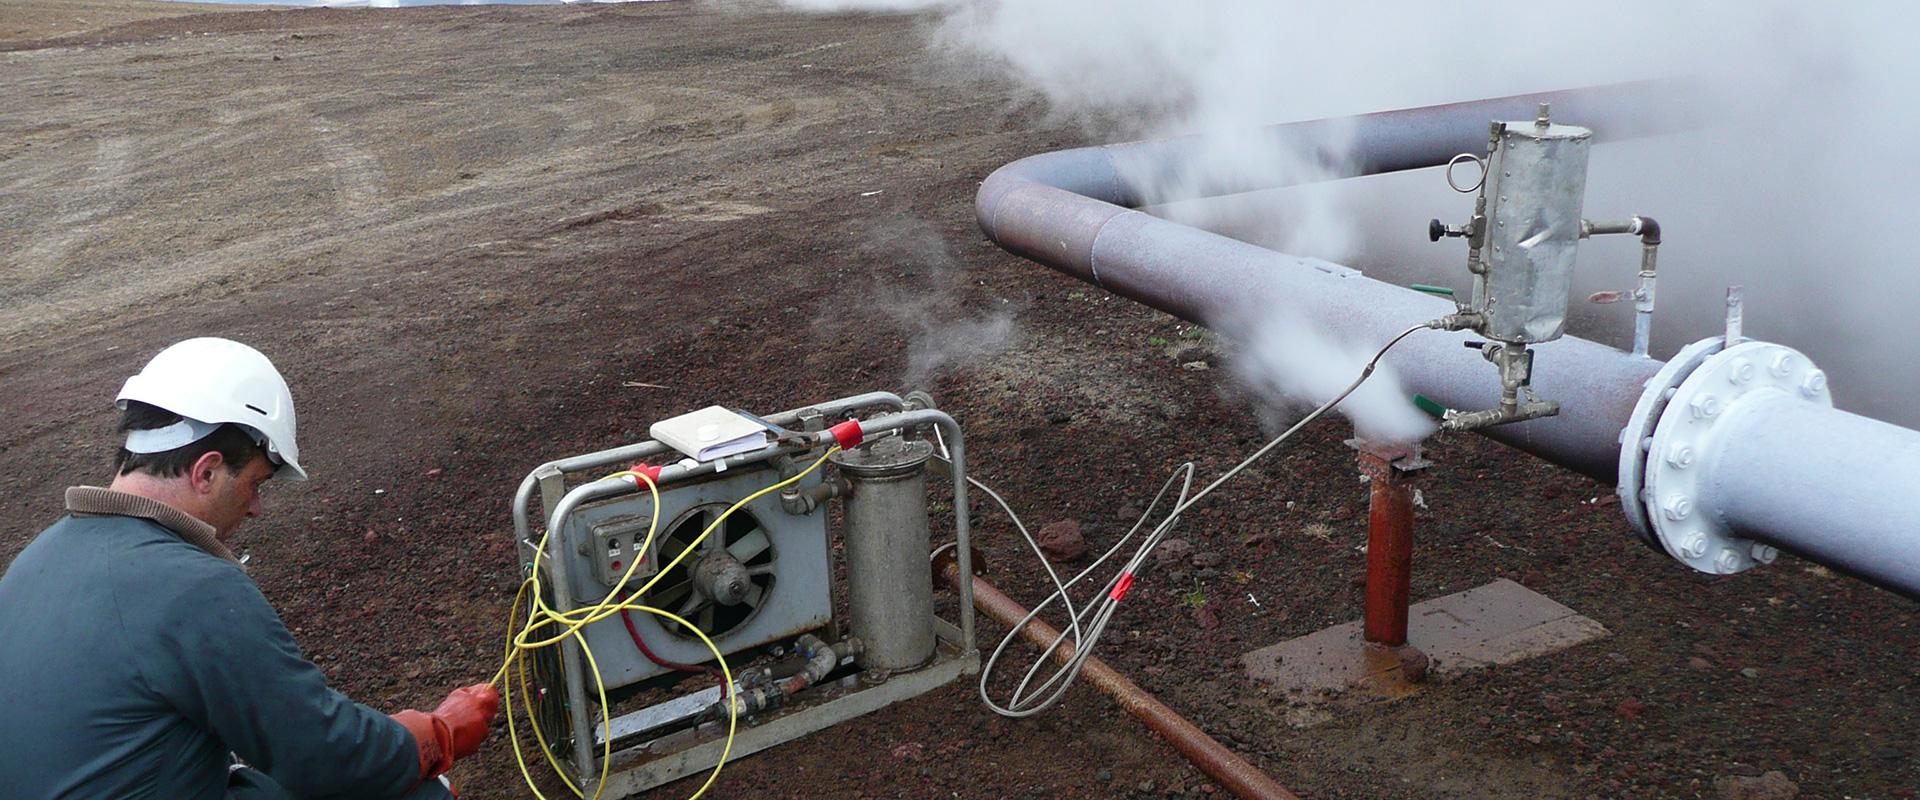 Réalisation de deux tests de traçage chimique, Islande